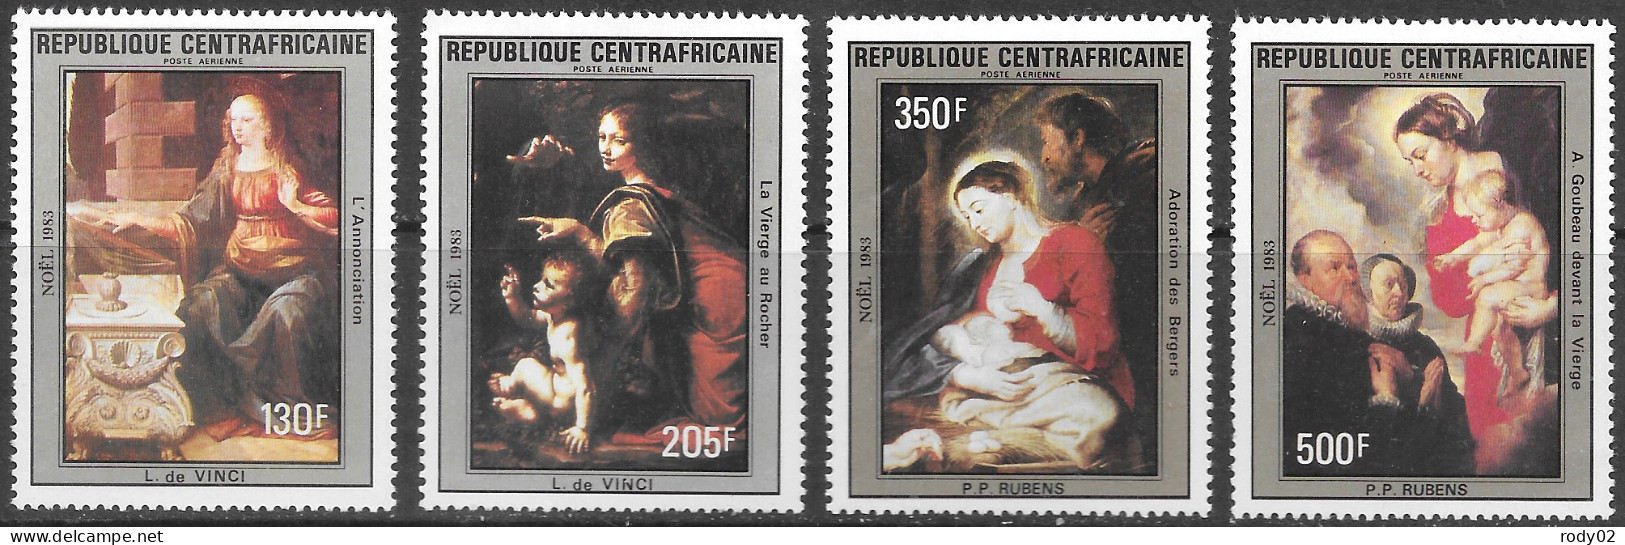 CENTRAFRIQUE - NOEL - TABLEAUX DE LEONARD DE VINCI - PA 294 A 297 - NEUF** MNH - Paintings